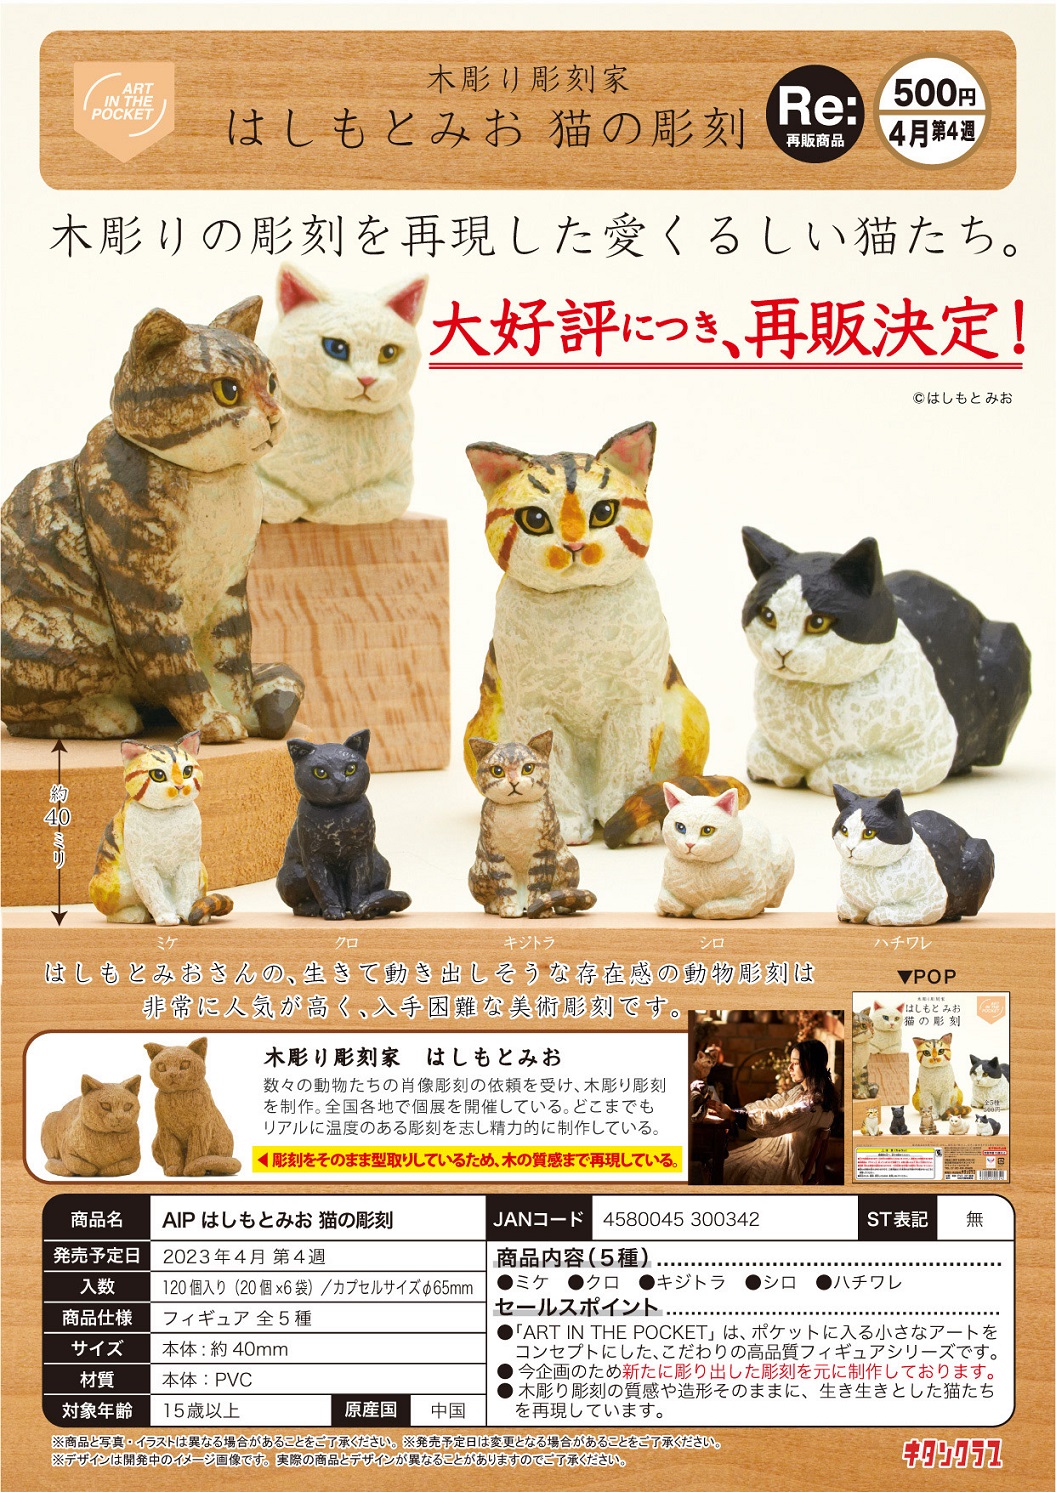 【B】500日元扭蛋 摆件 猫咪木雕 全5种 (1袋20个) 300342